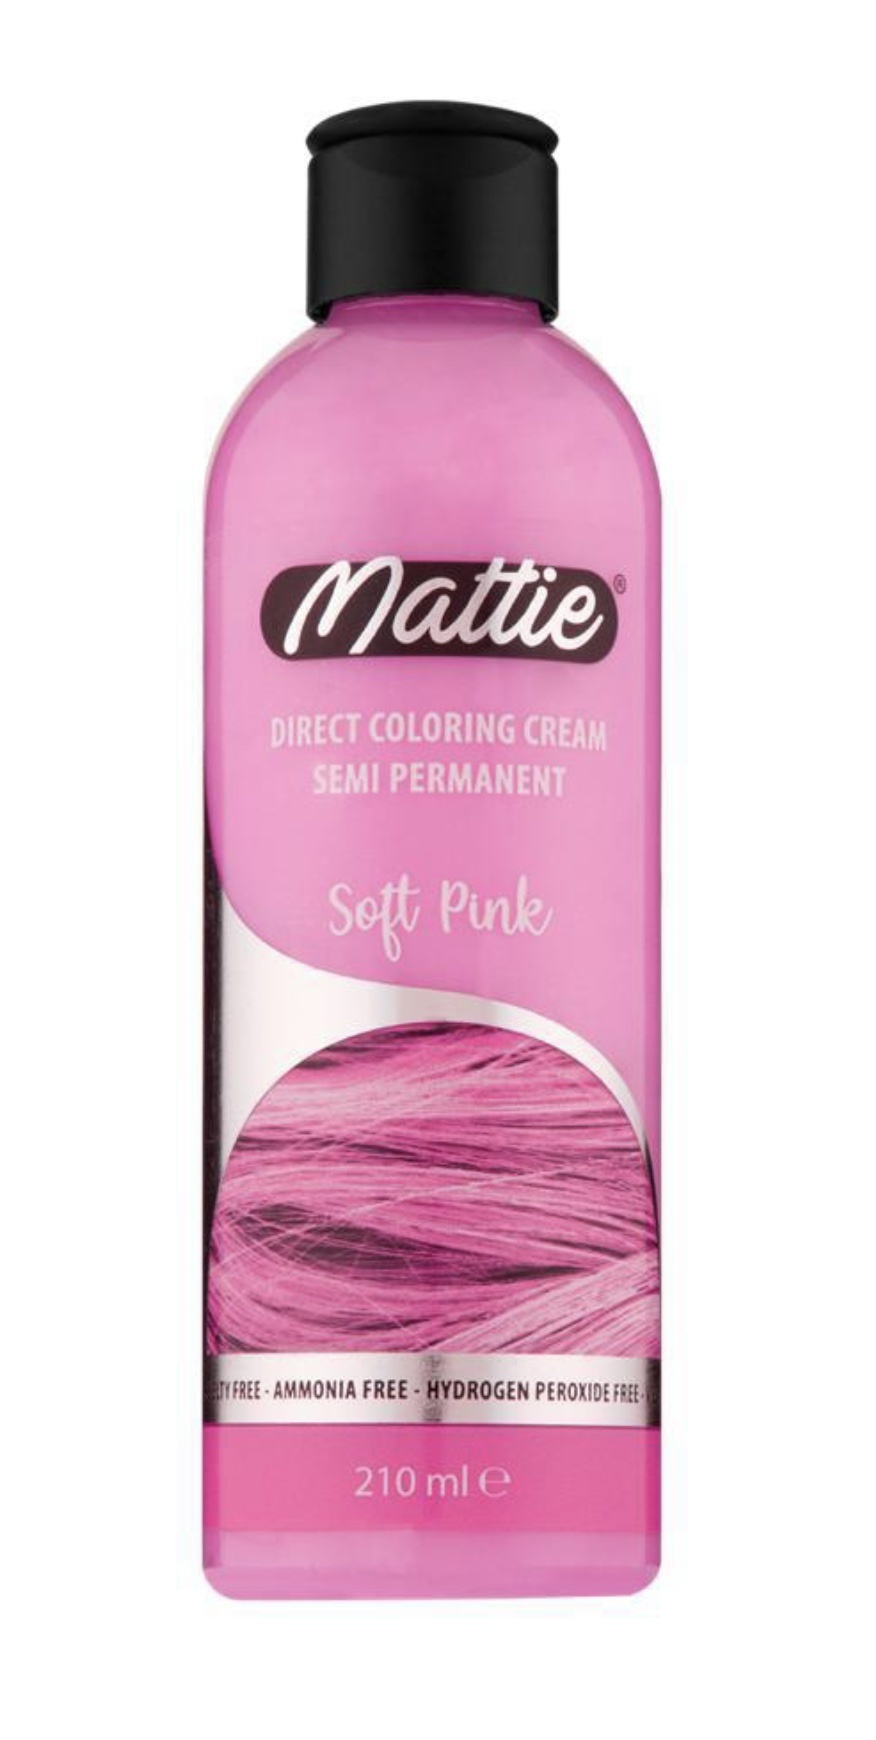 Mattie Direct Coloring Cream Semi Permanent